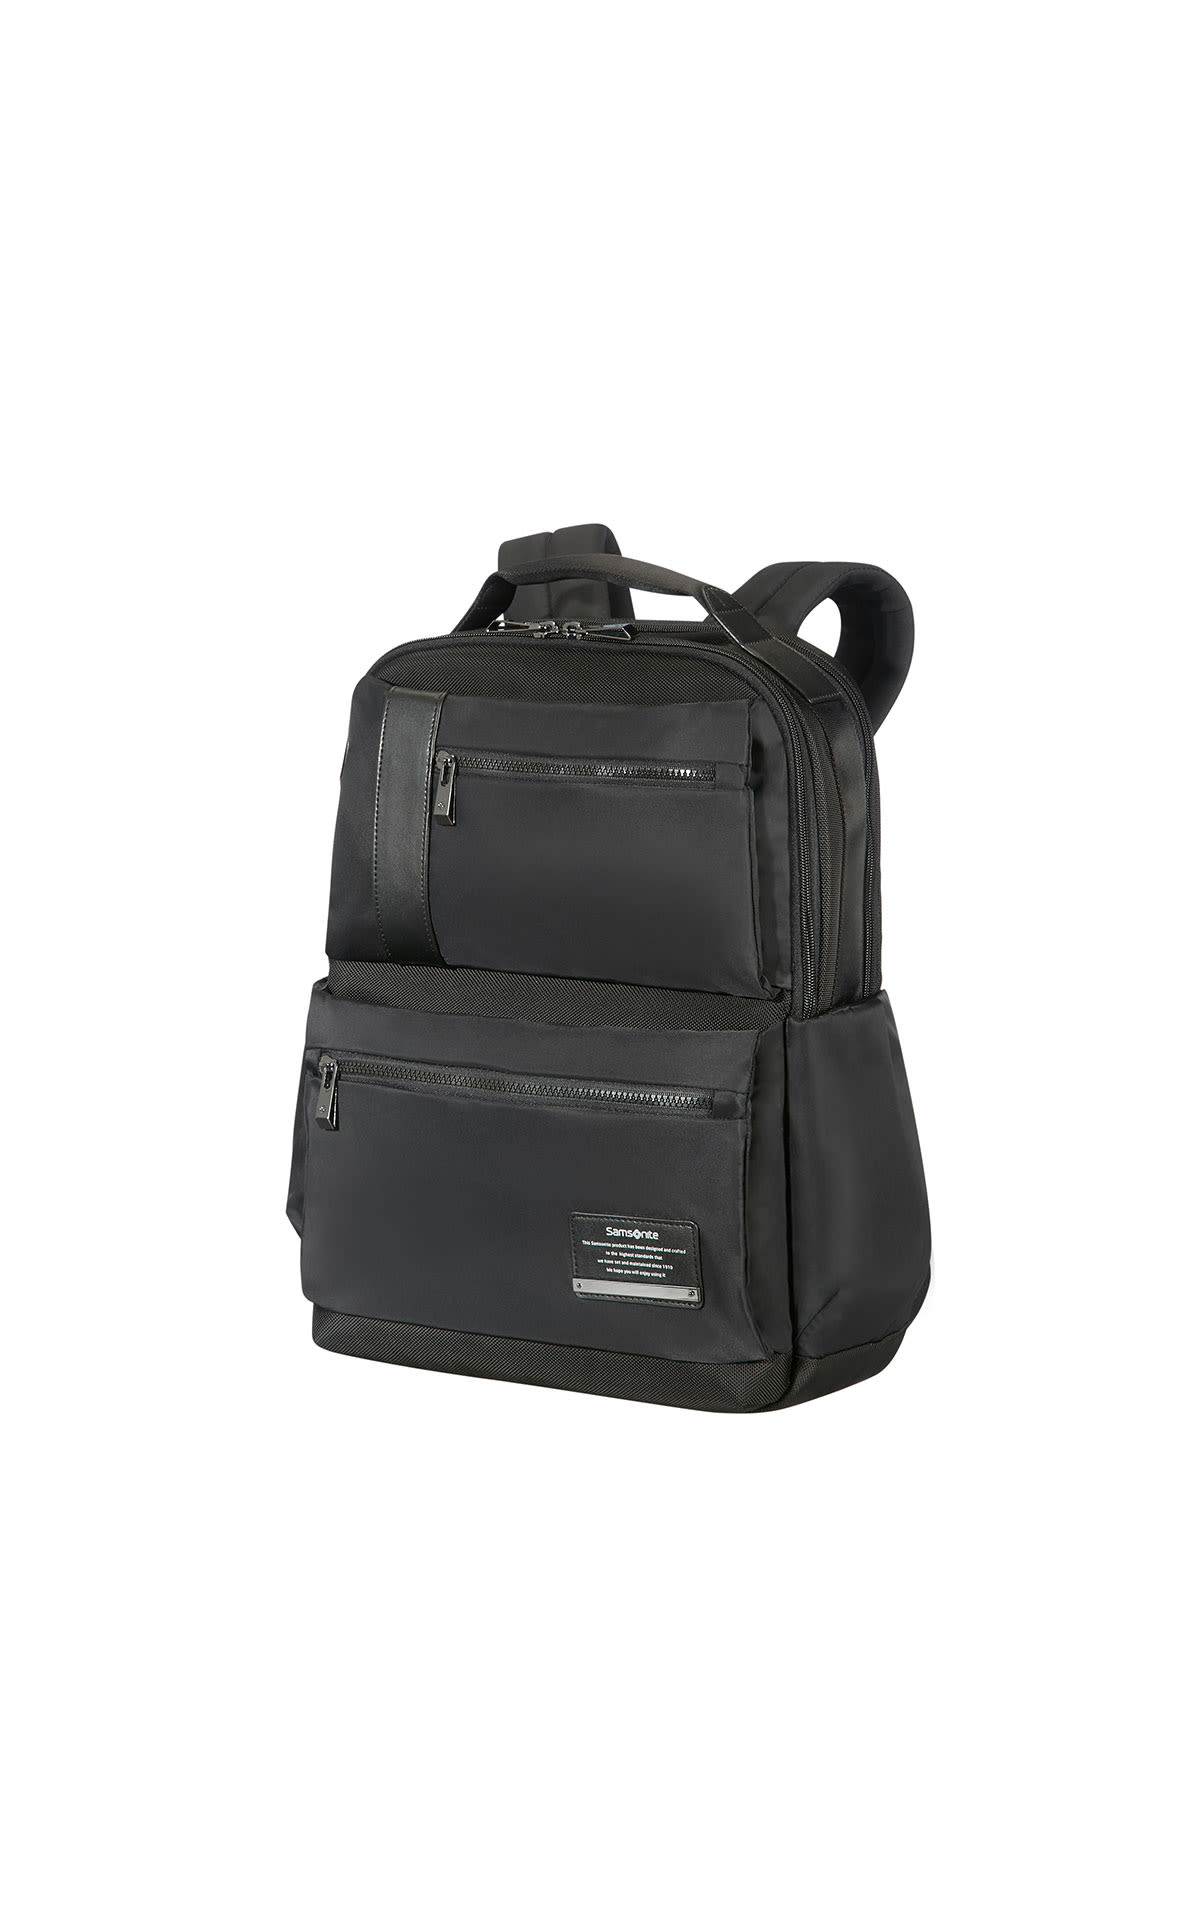 Samsonite Laptop backpack 15.6" from Bicester Village